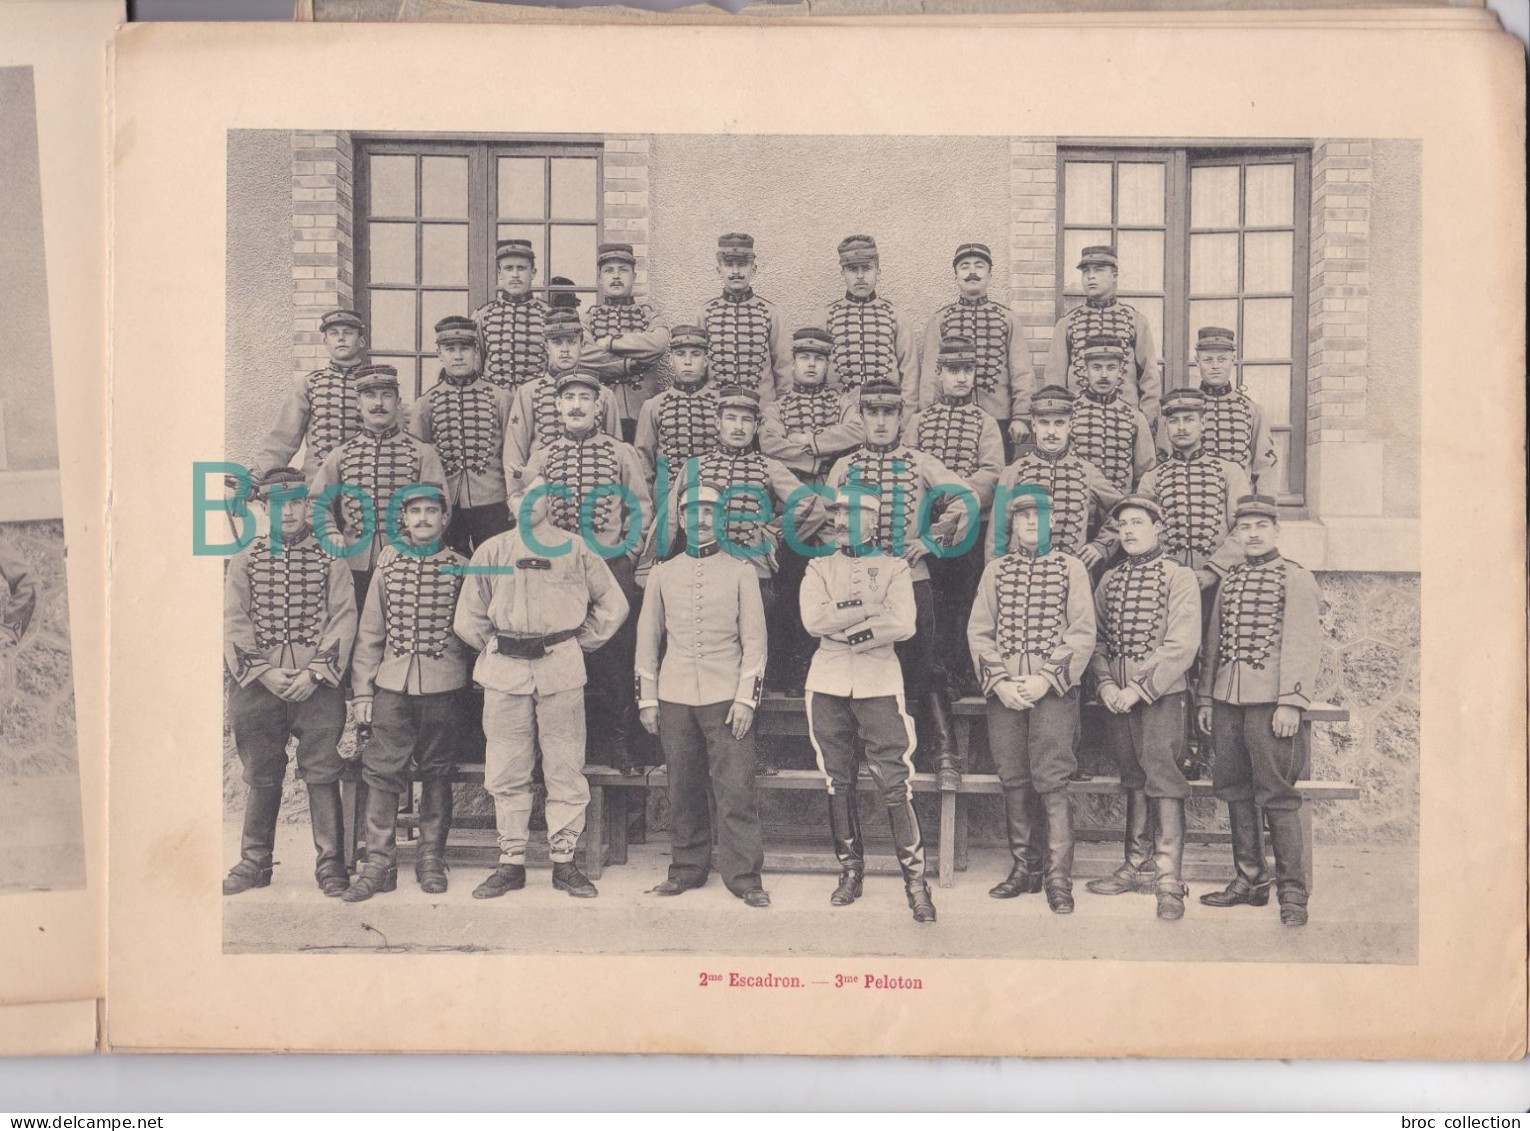 Châlons-sur-Marne, 5ème Régiment de Chasseurs, Mai 1908, album souvenir, 33 pages de photos